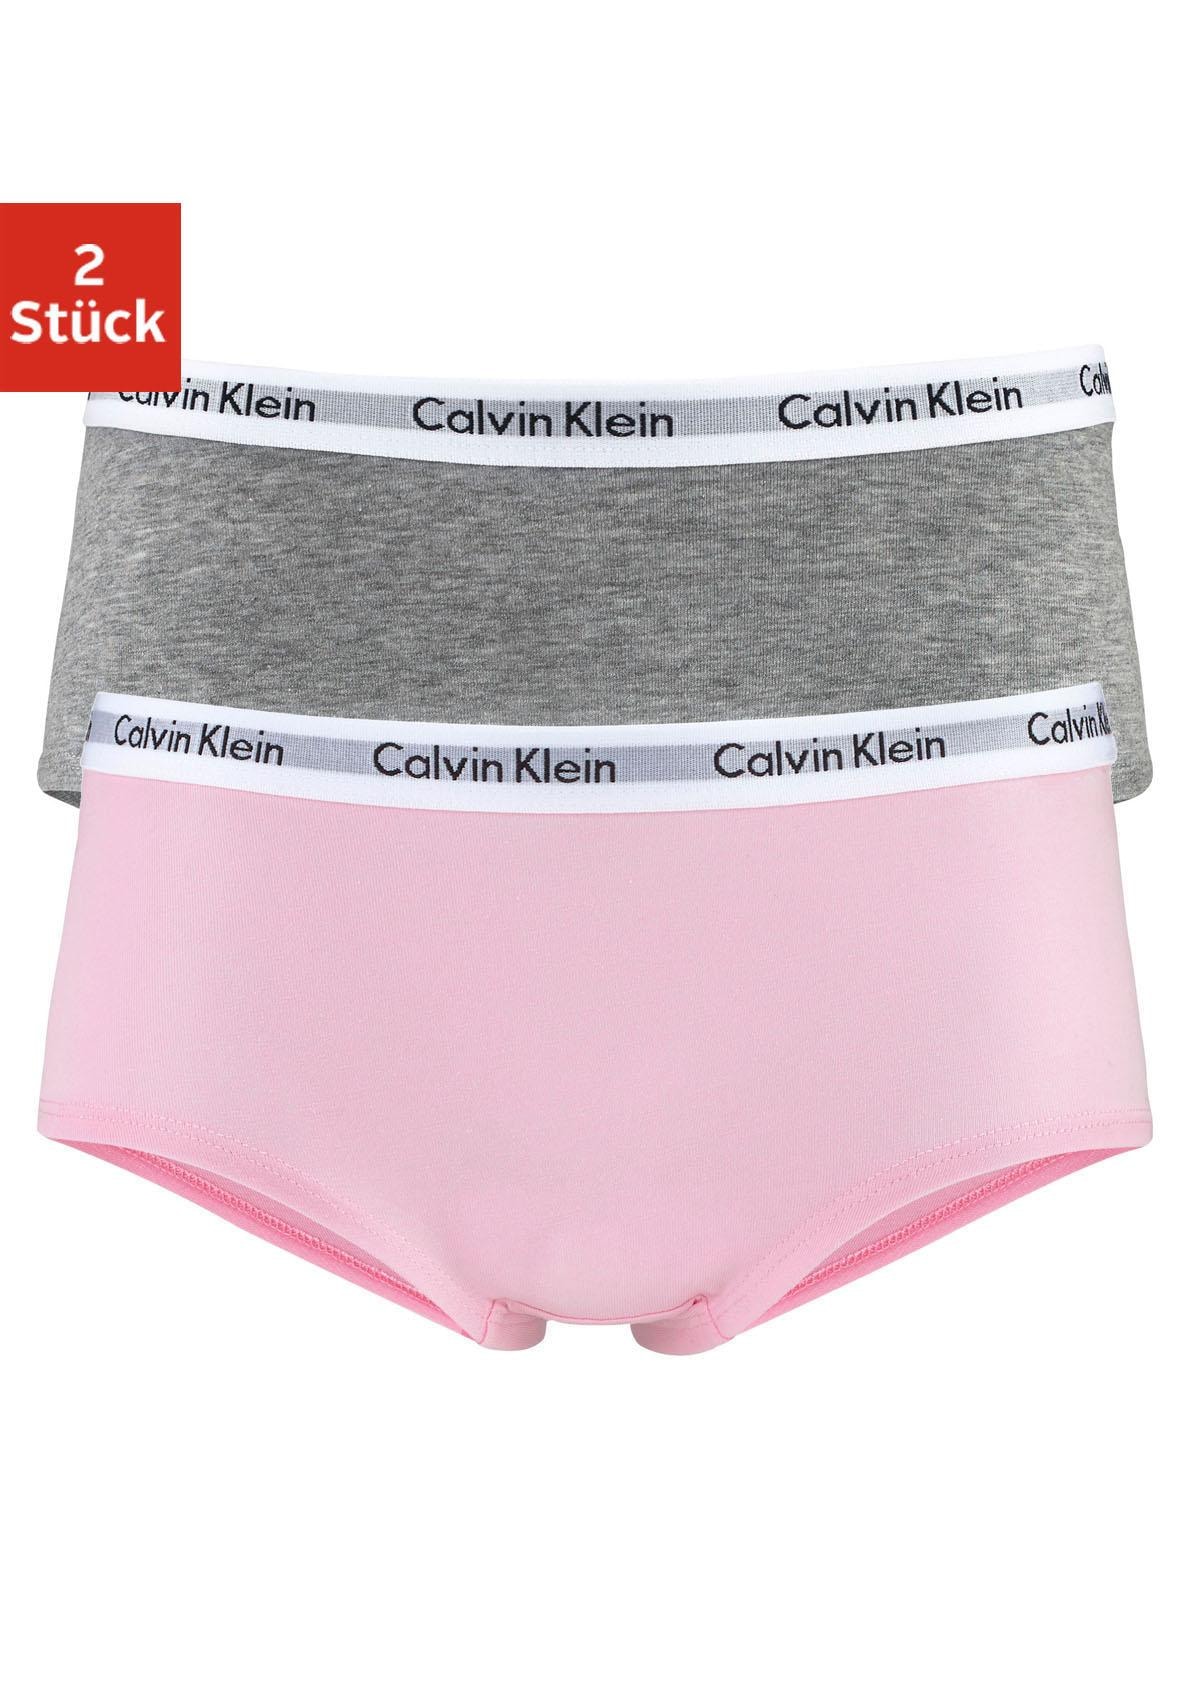 Calvin Klein Panty, (2 St.), Kinder Kids Junior MiniMe,für Mädchen mit  Logobund bei OTTO